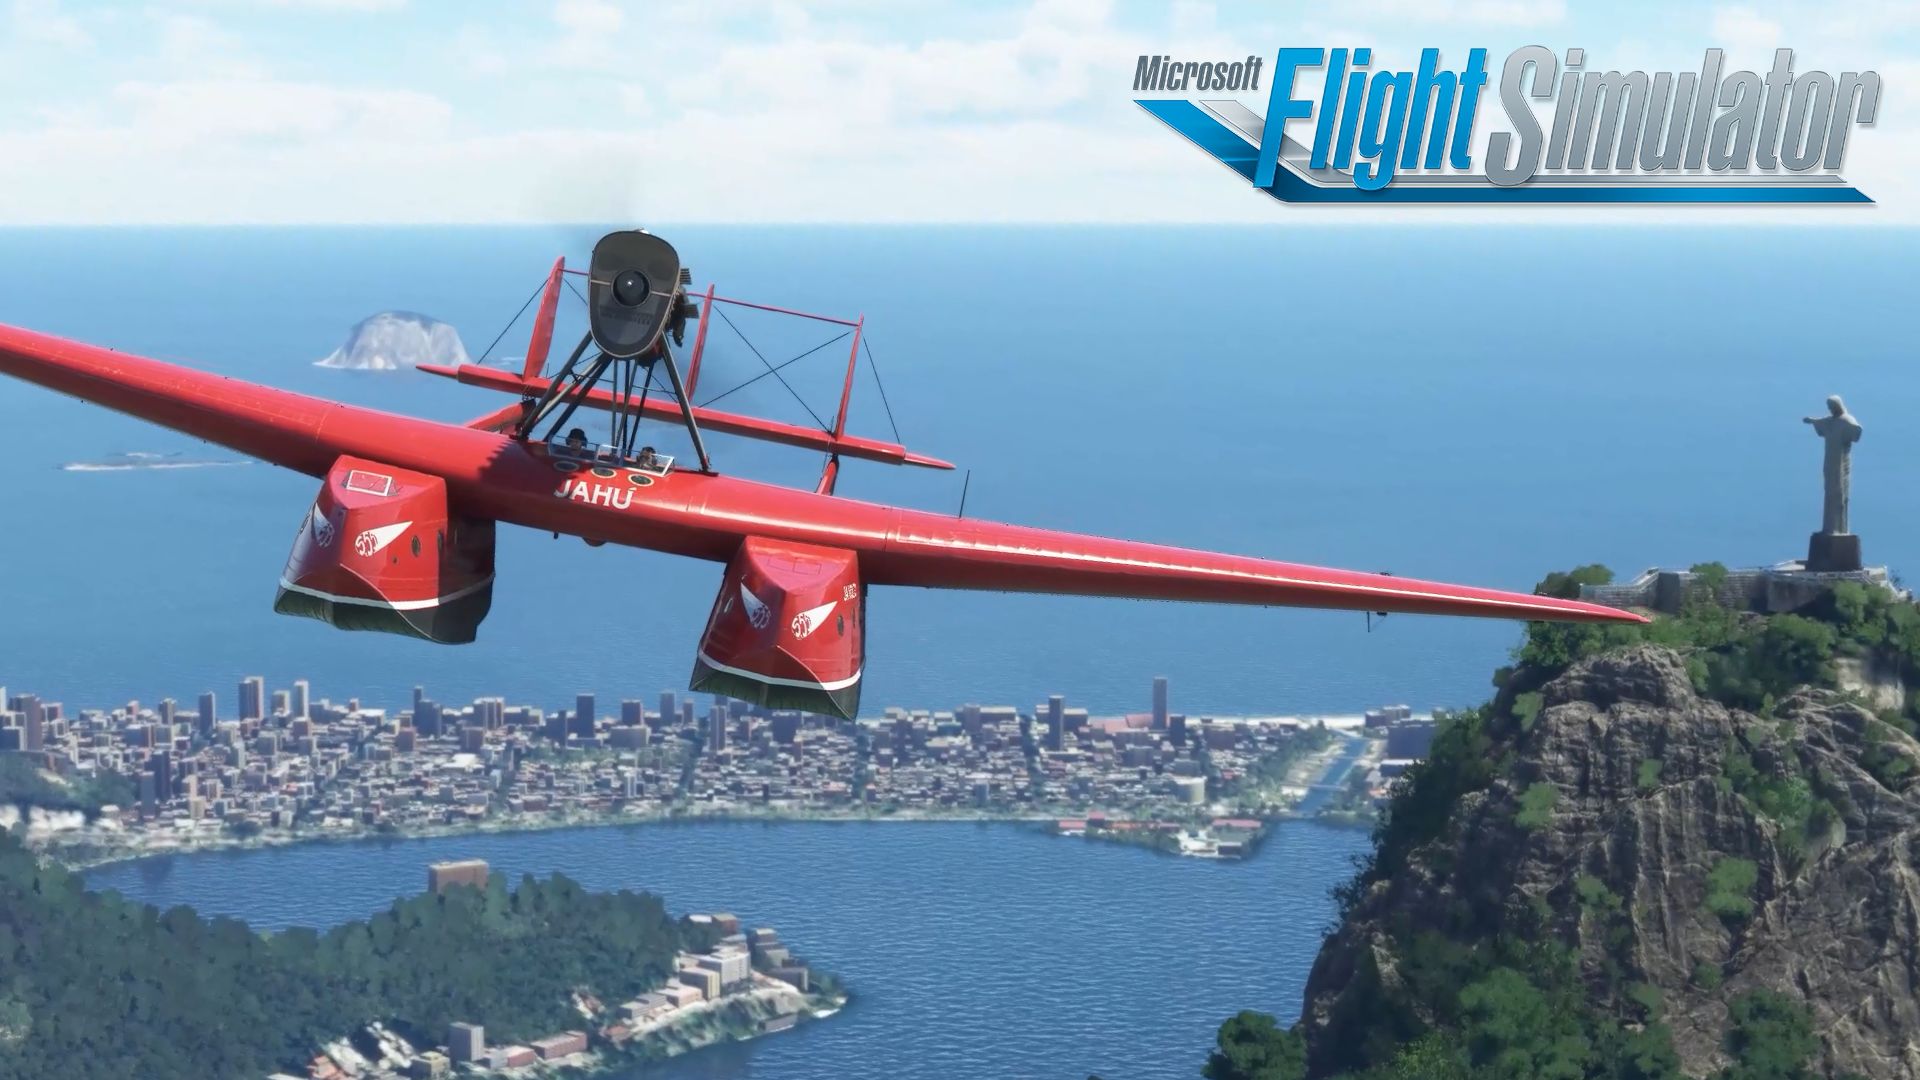 Microsoft Flight Simulator - Local Legends 4 - S.55 Savoia-Marchetti